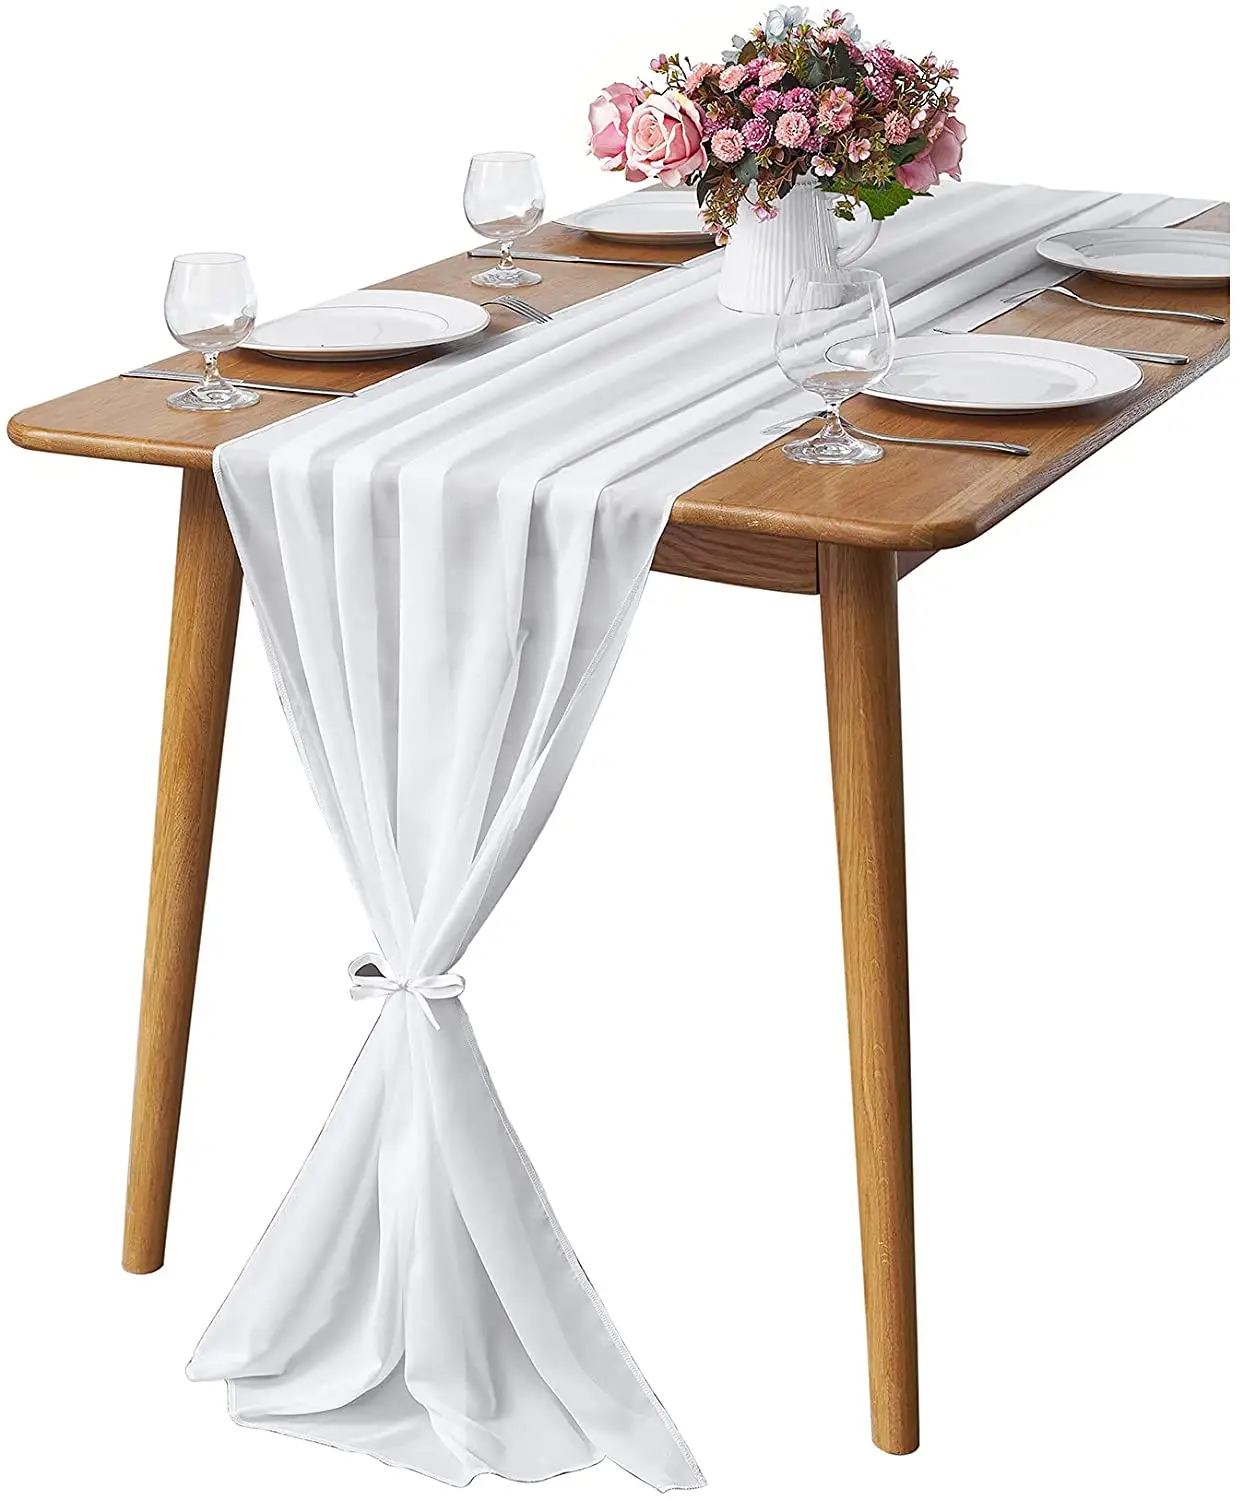 Taplak Meja Tipis Putih 29X120 Inci Taplak Meja untuk Resepsi Pernikahan Boho Pedesaan Dekorasi Pesta Pernikahan Pengantin